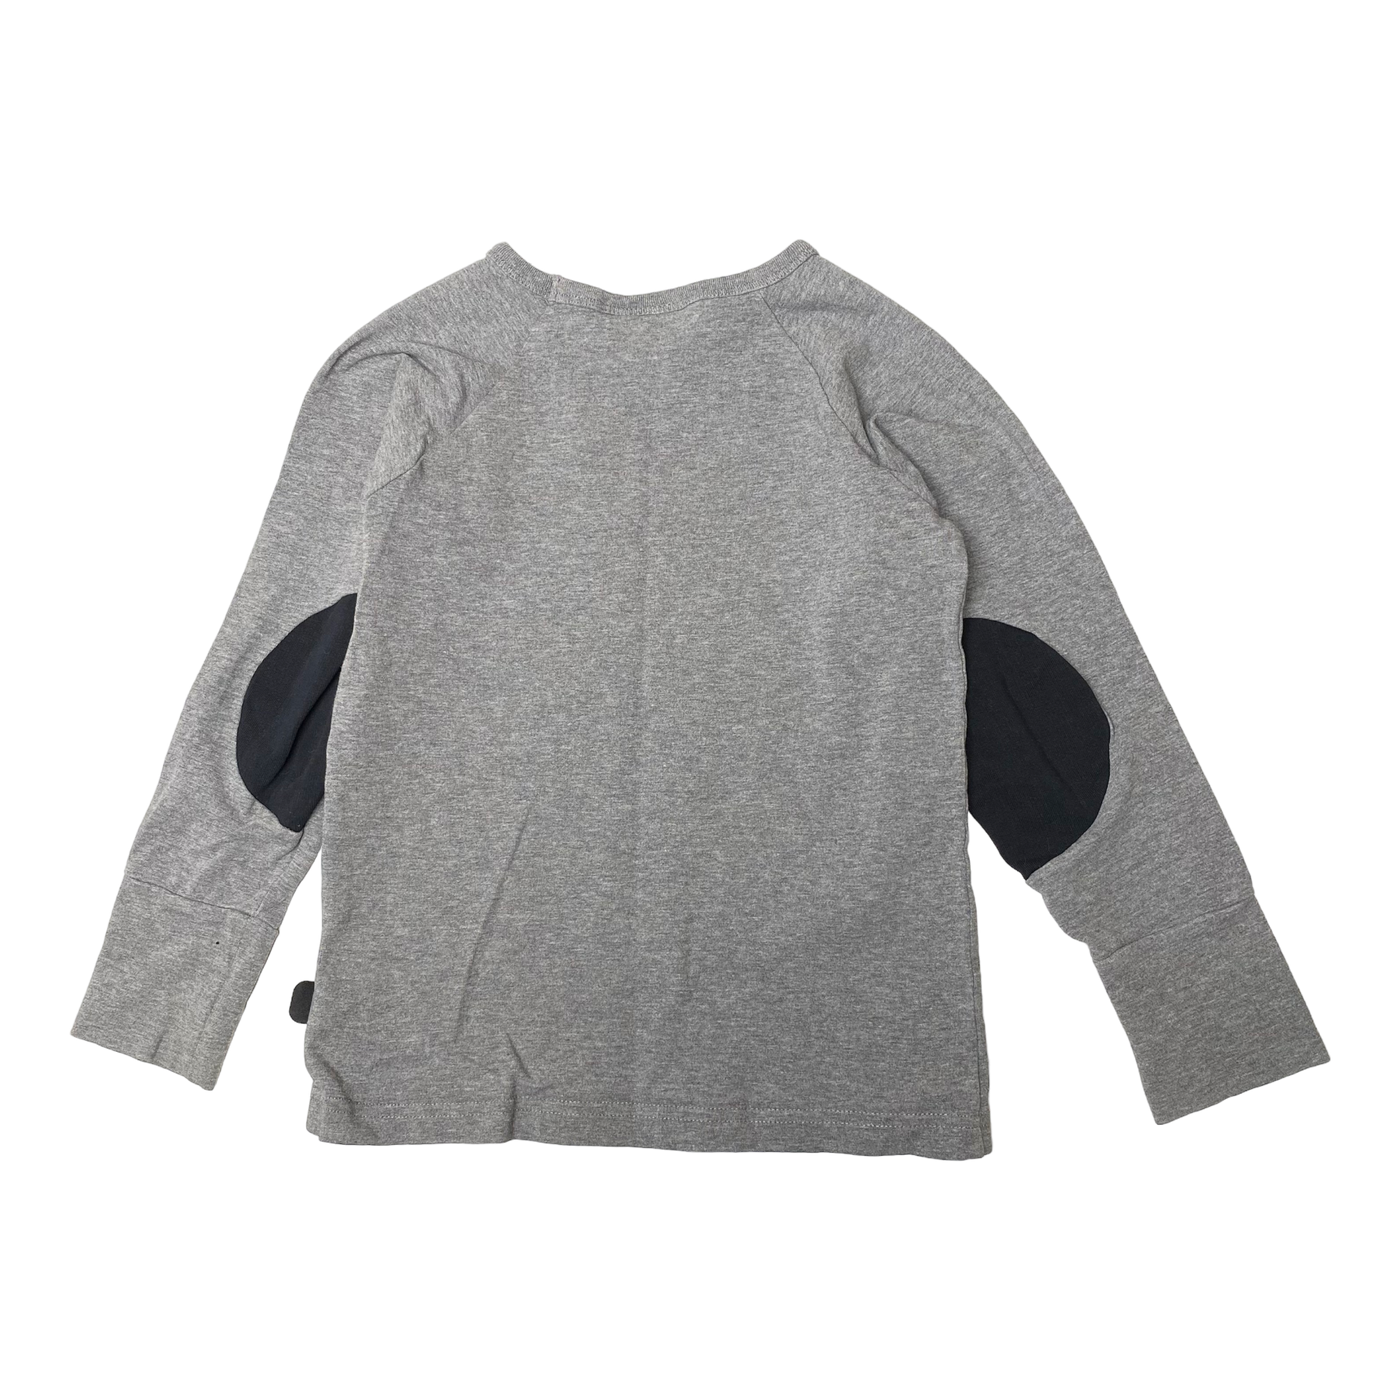 Papu patch shirt, color | 98/104cm